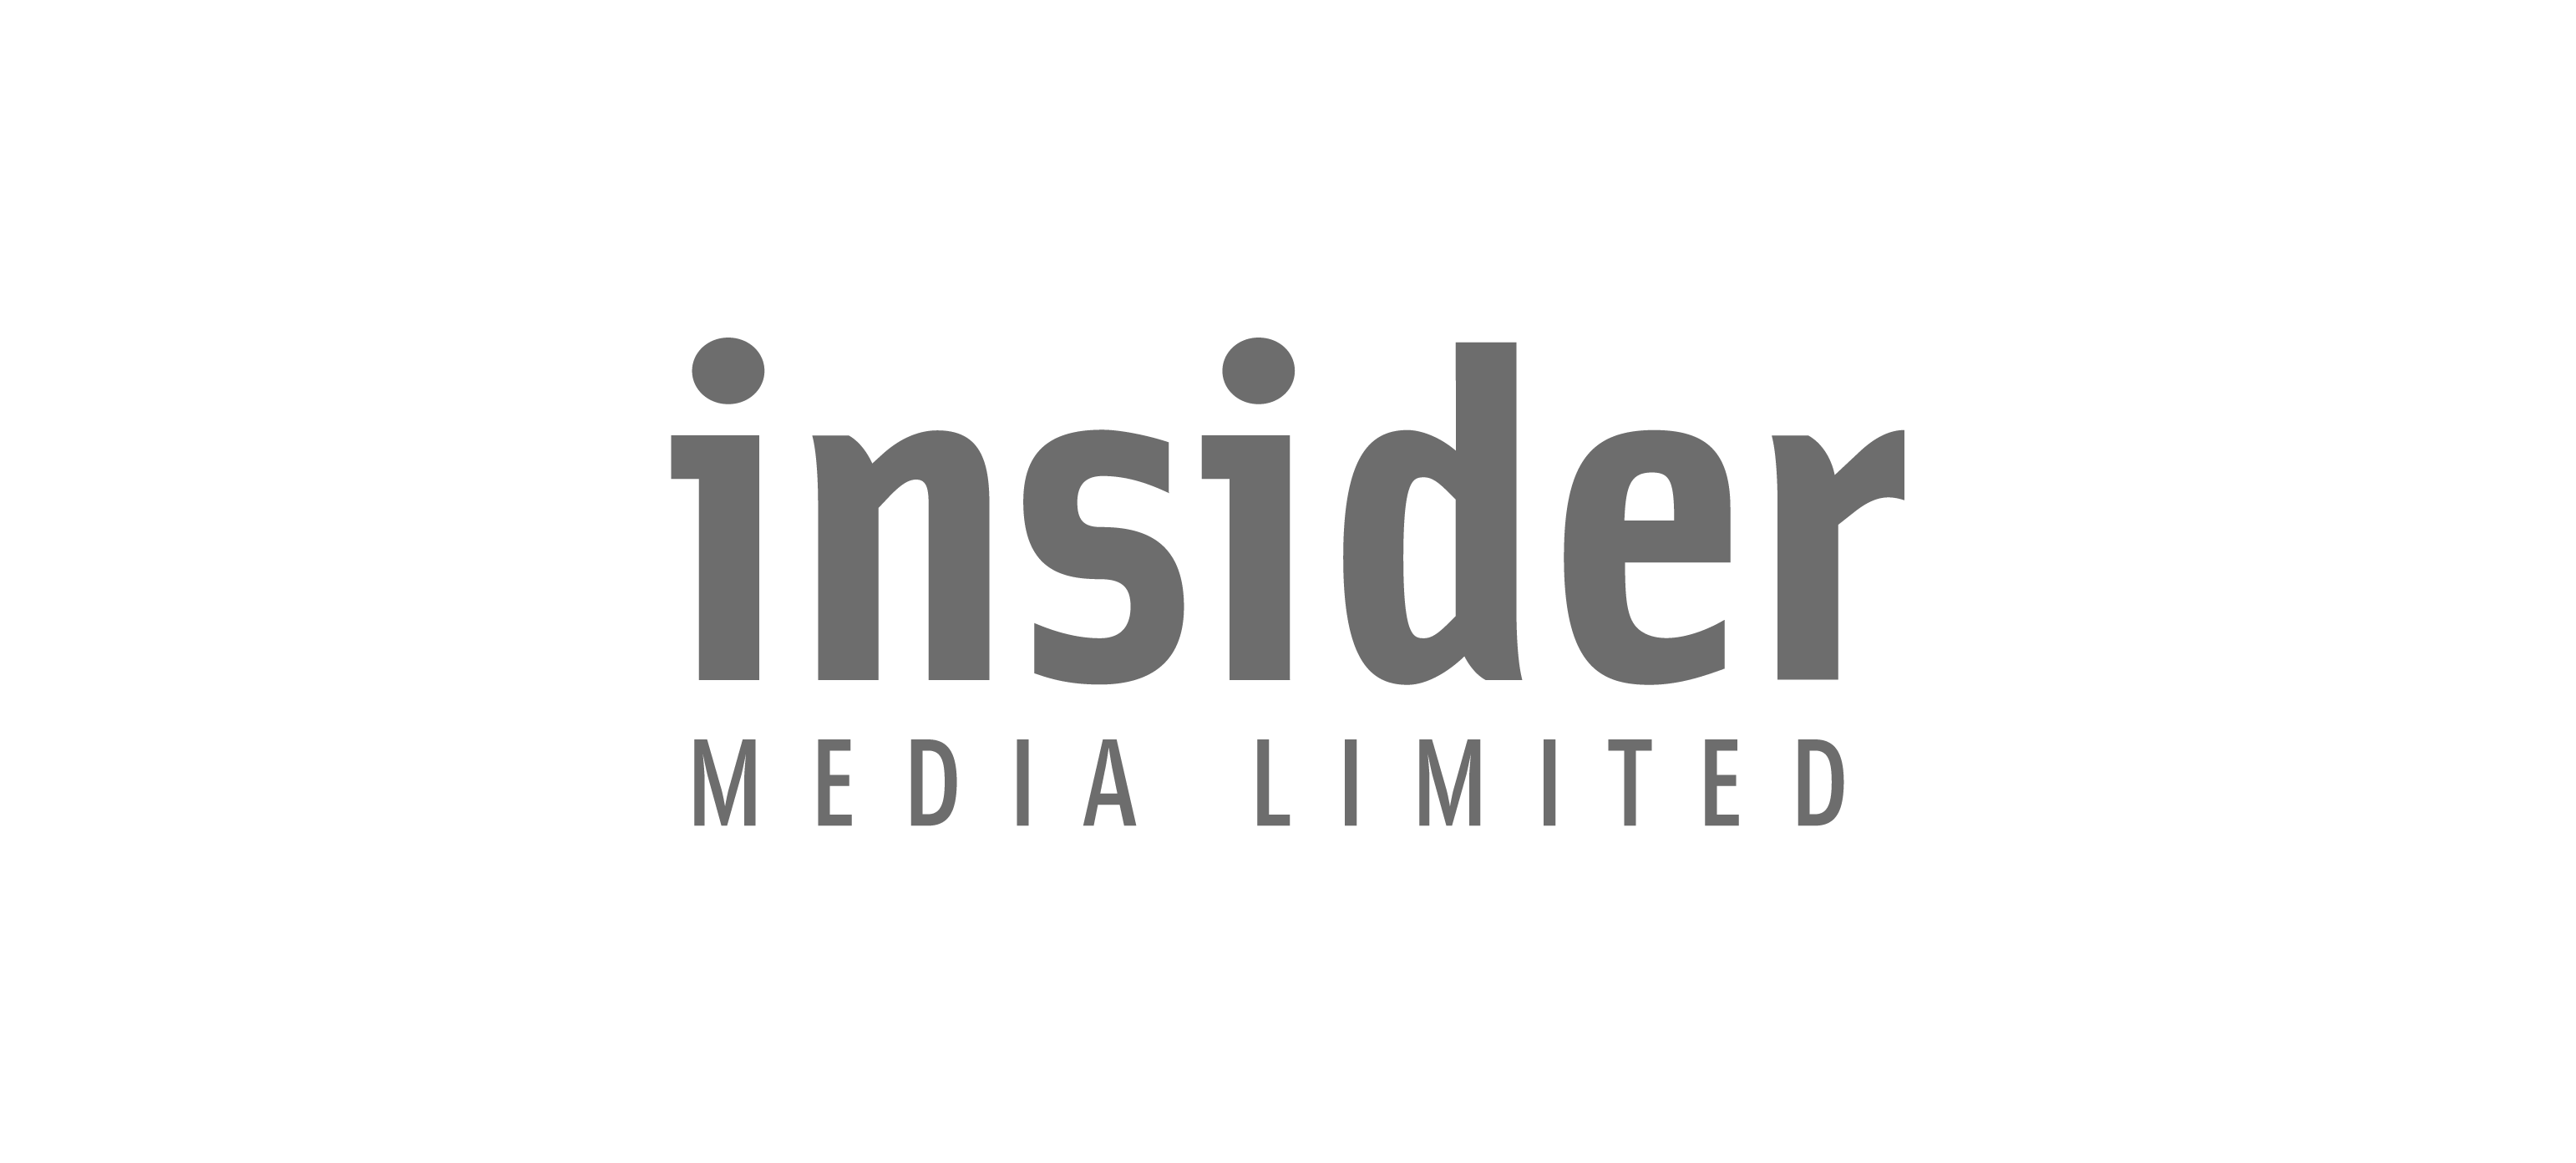 Deazy Client Logos_Insider Media Limited - Dark